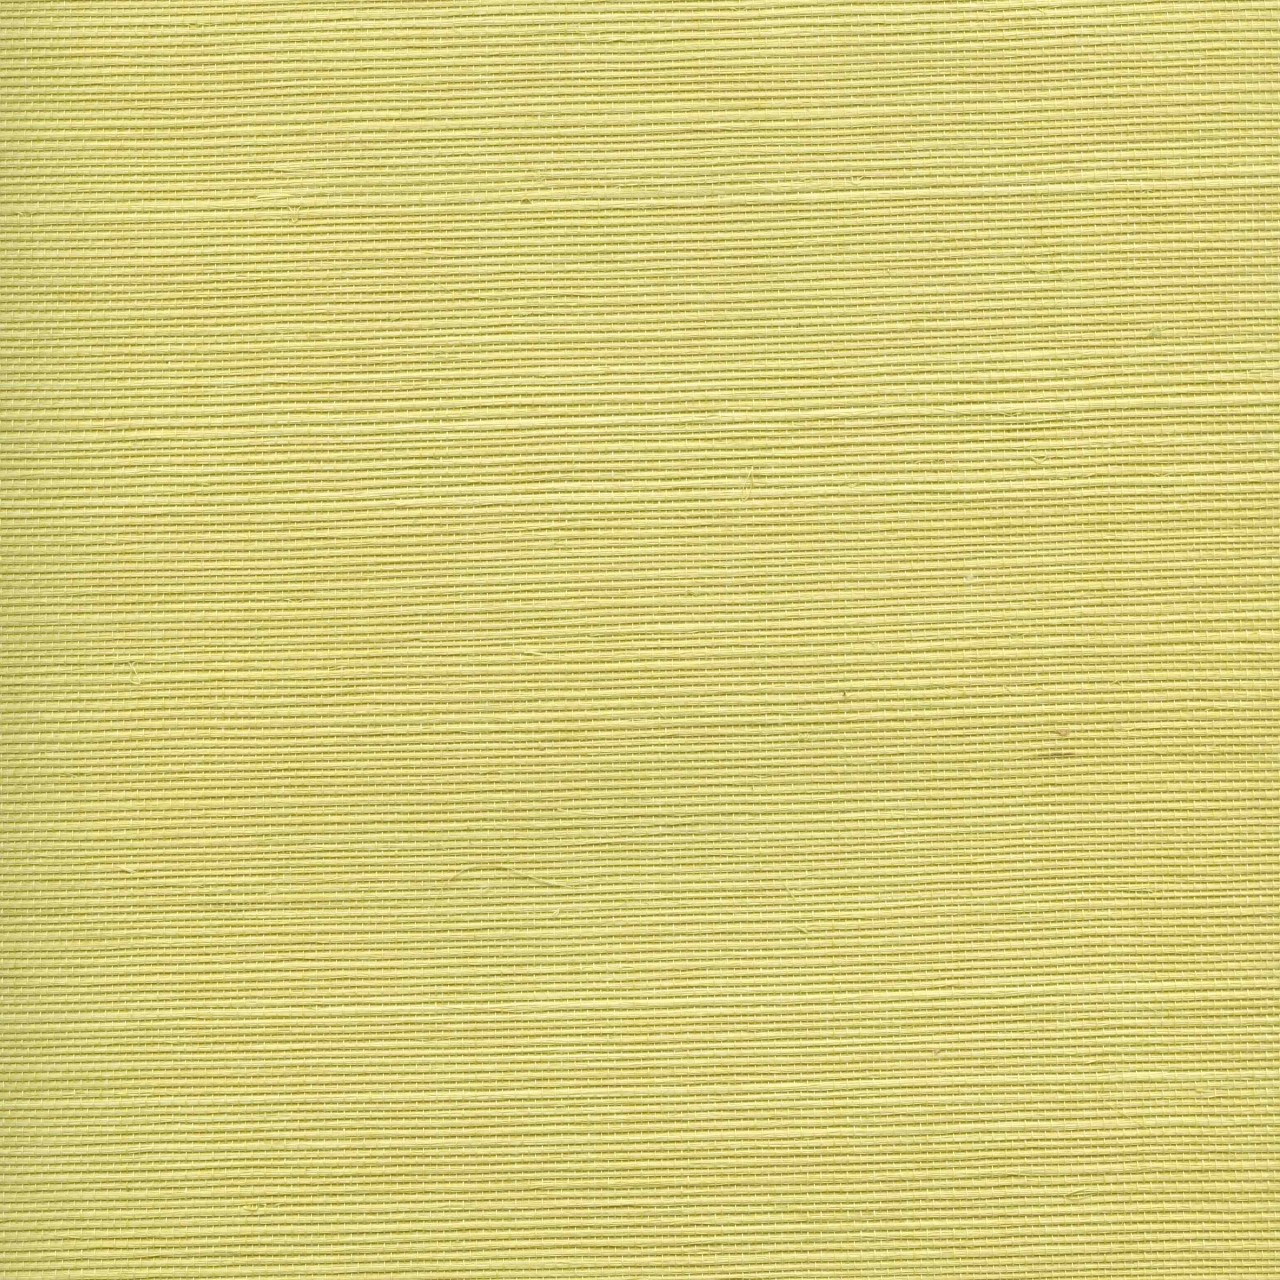 Yellow grasscloth wallpaper 2015 - Grasscloth Wallpaper